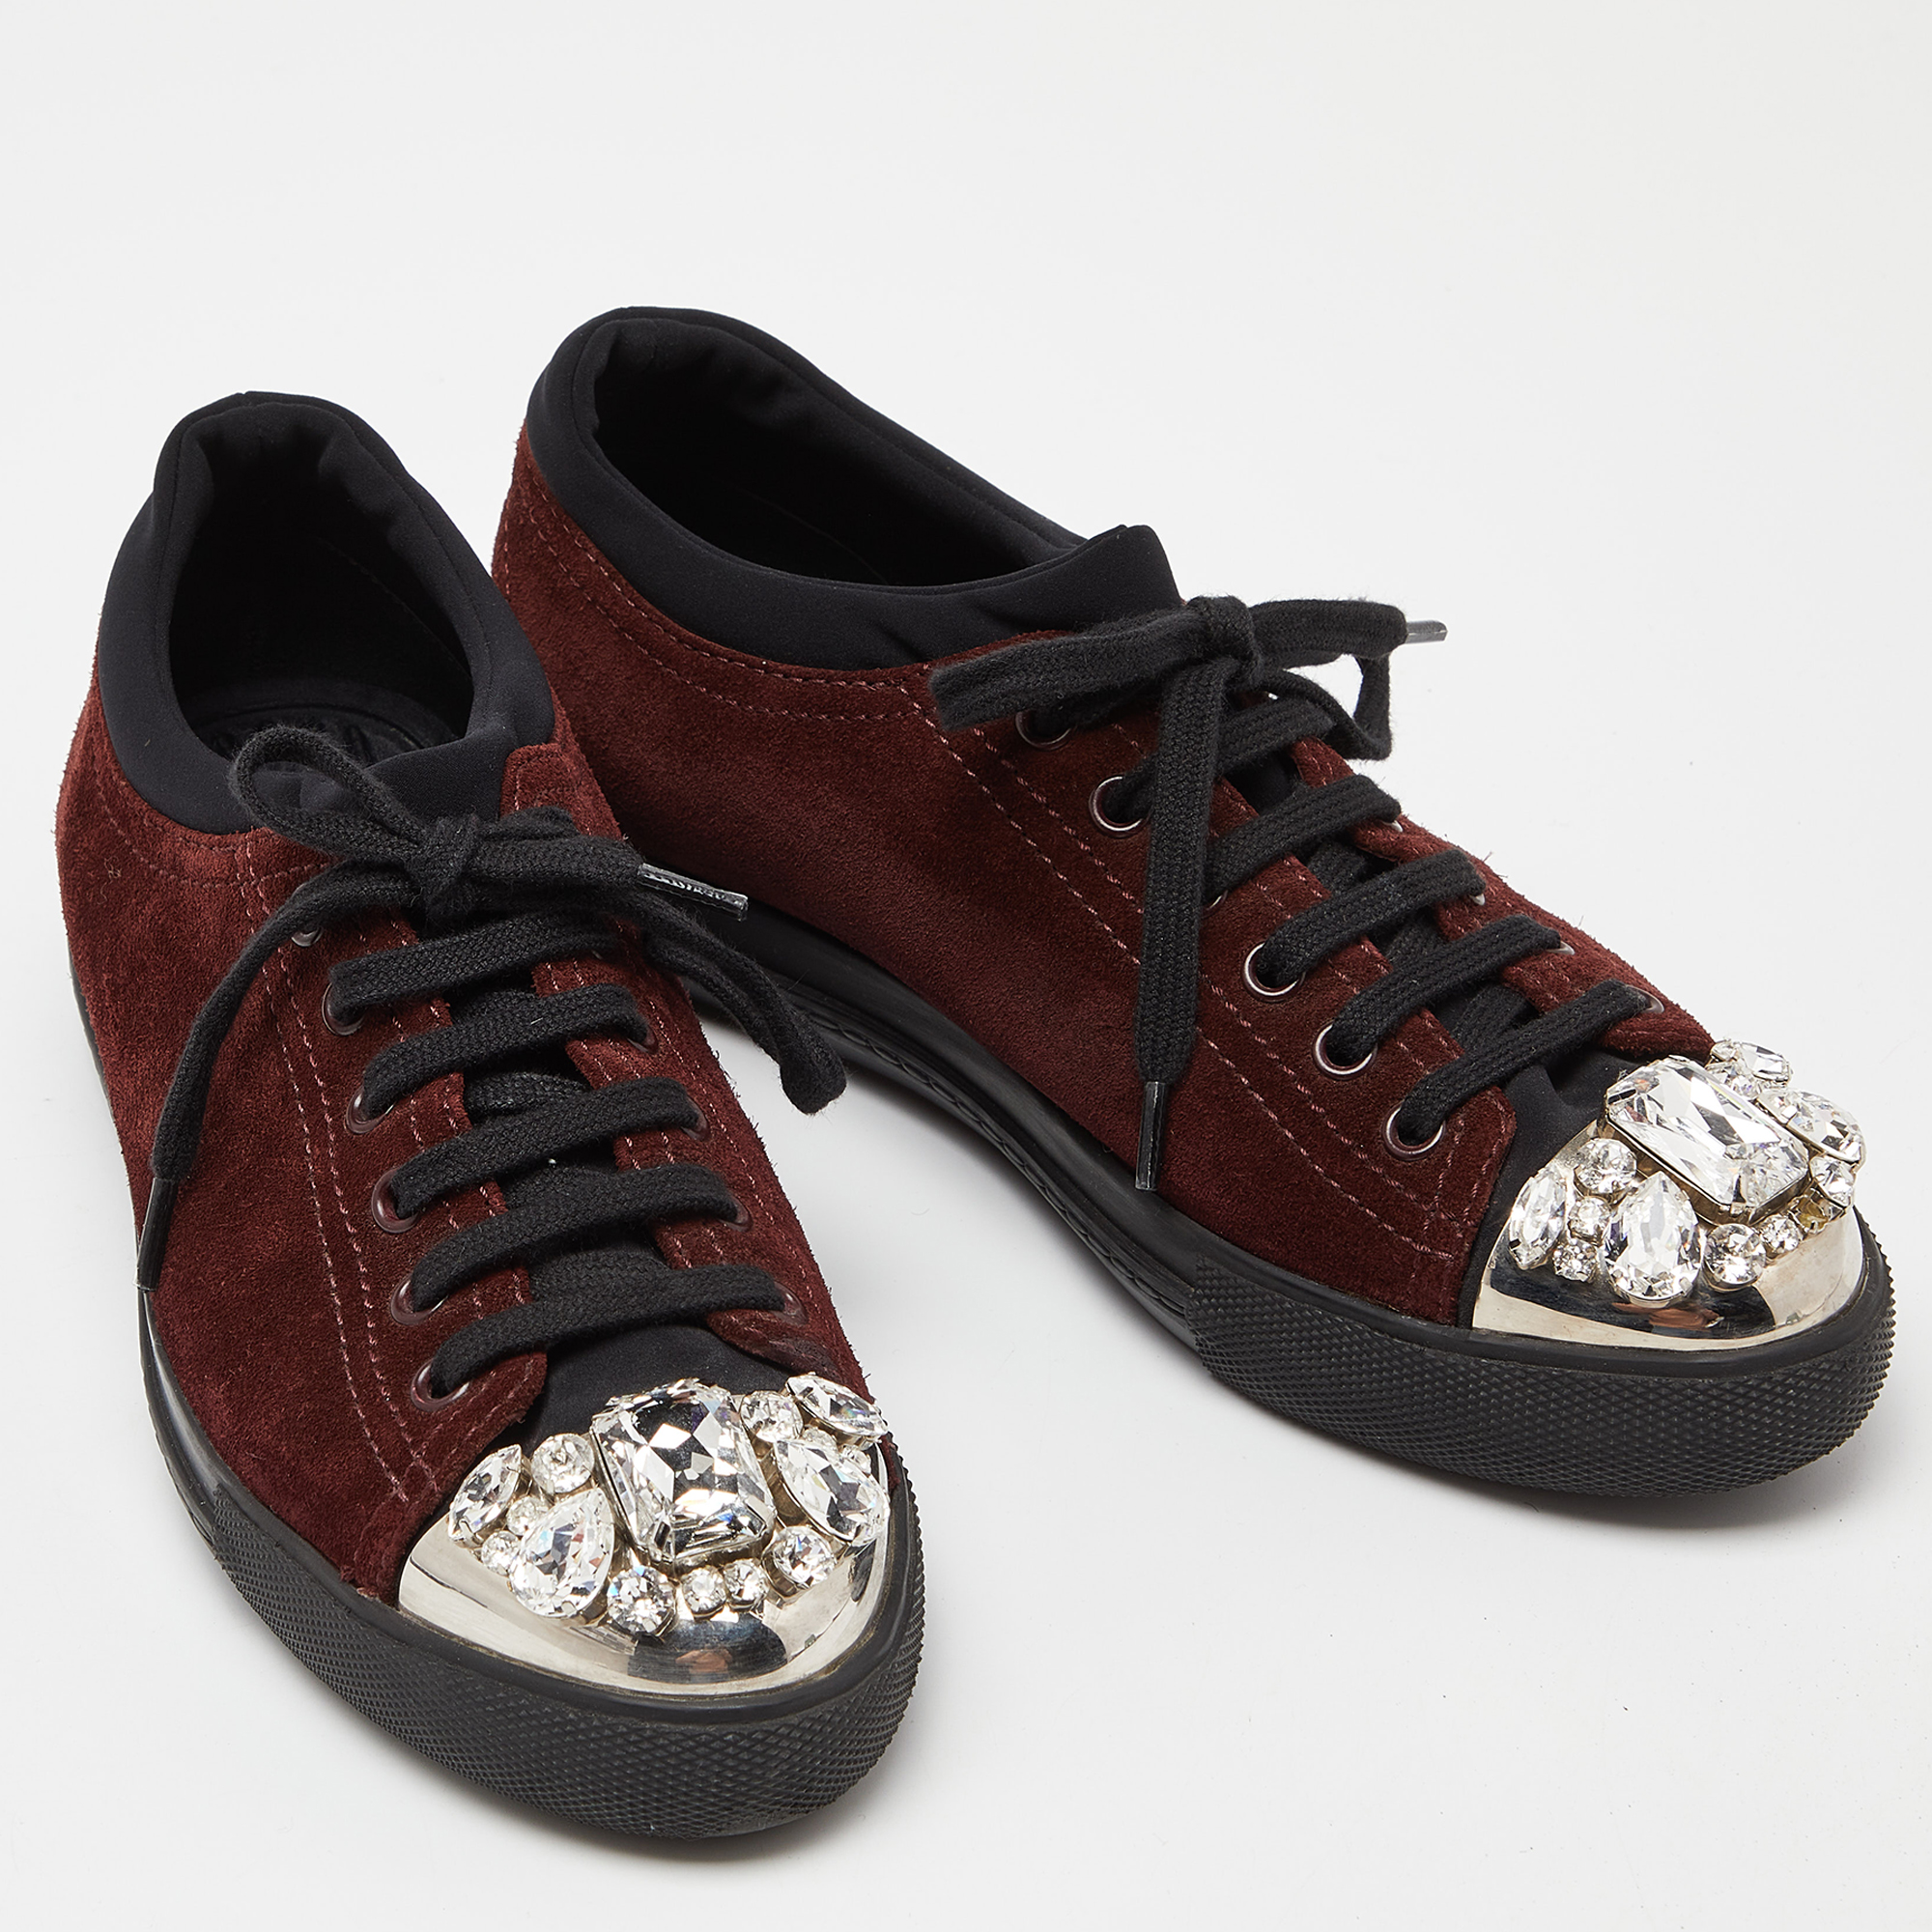 Miu Miu Brown/Black Suede And Neoprene Crystal Cap Toe Sneakers Size 38.5